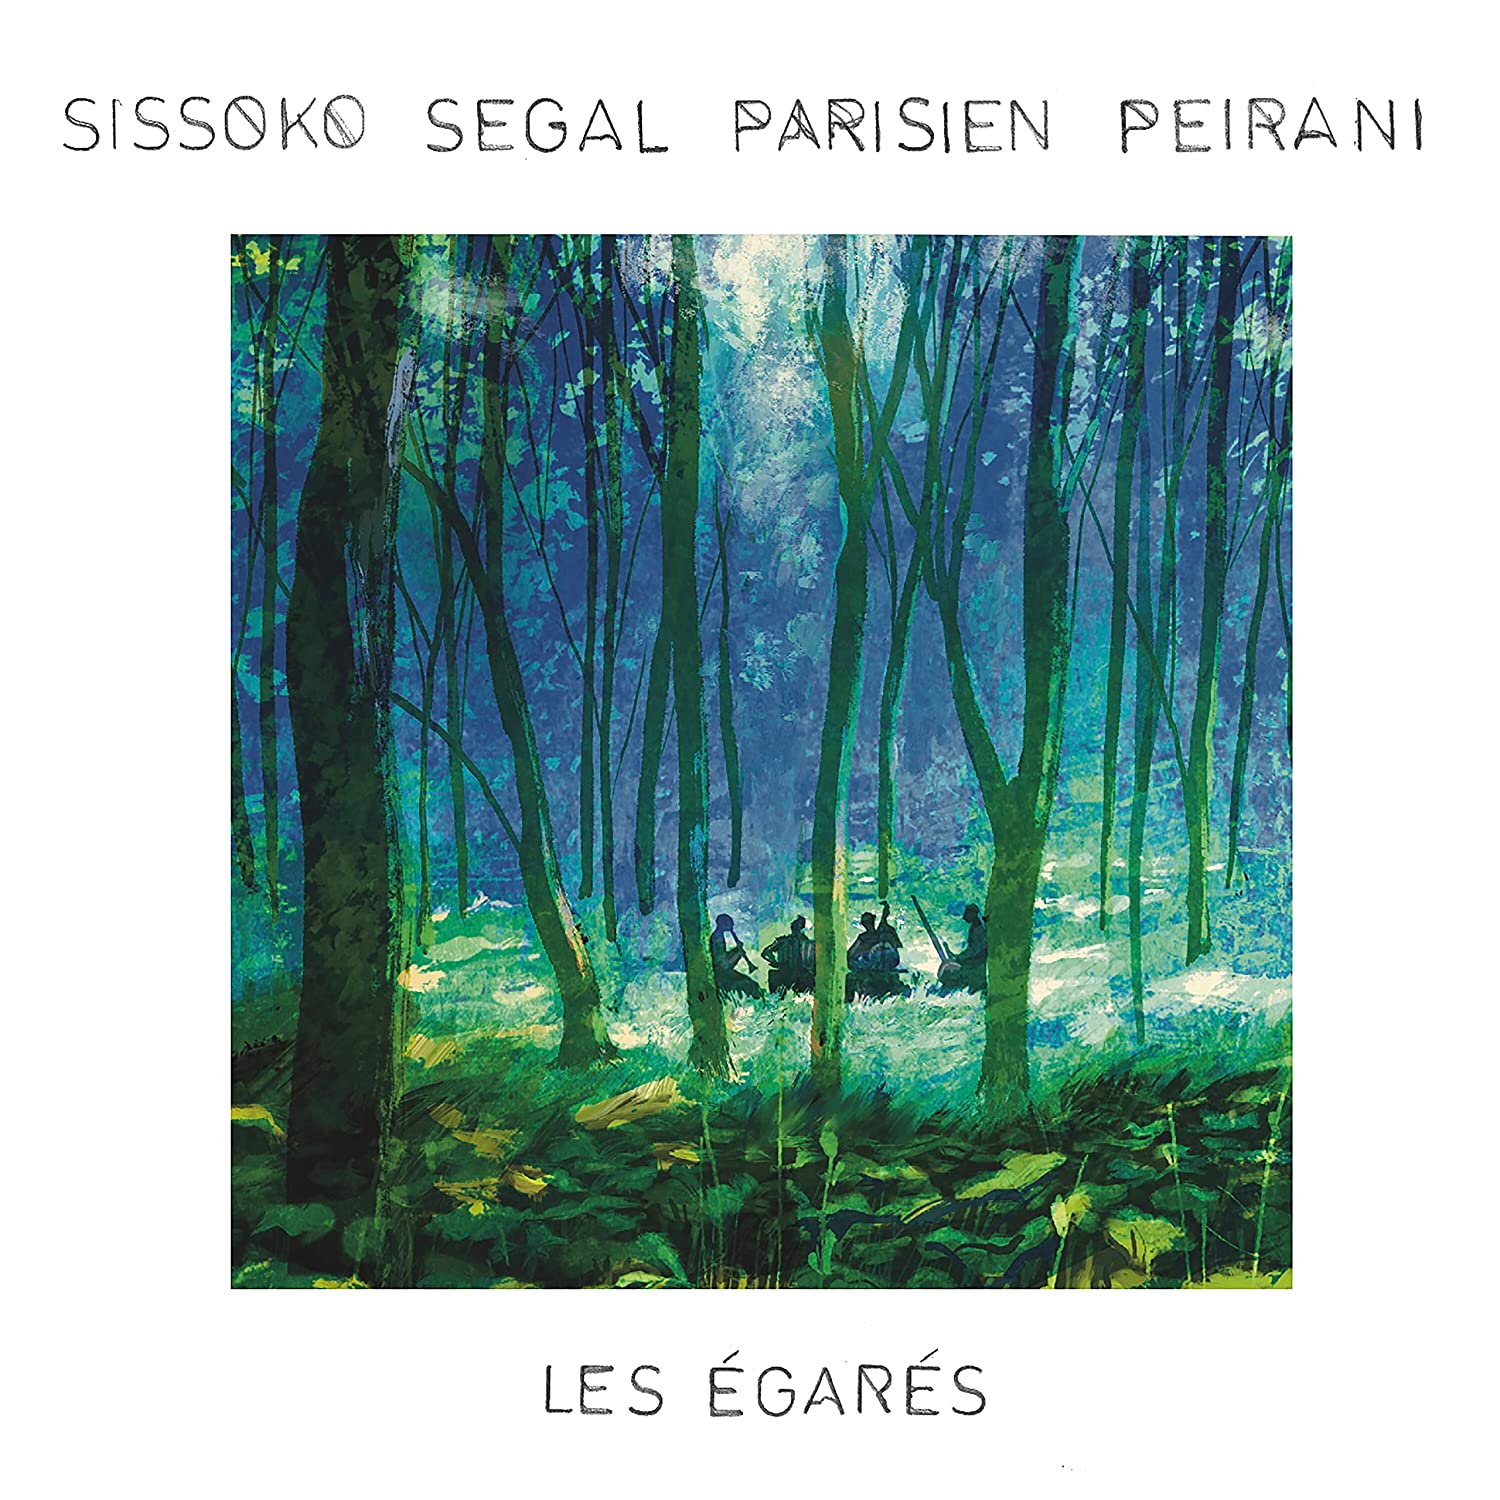 Sissoko Segal Parisien Peirani nuovo album e tour - immagini